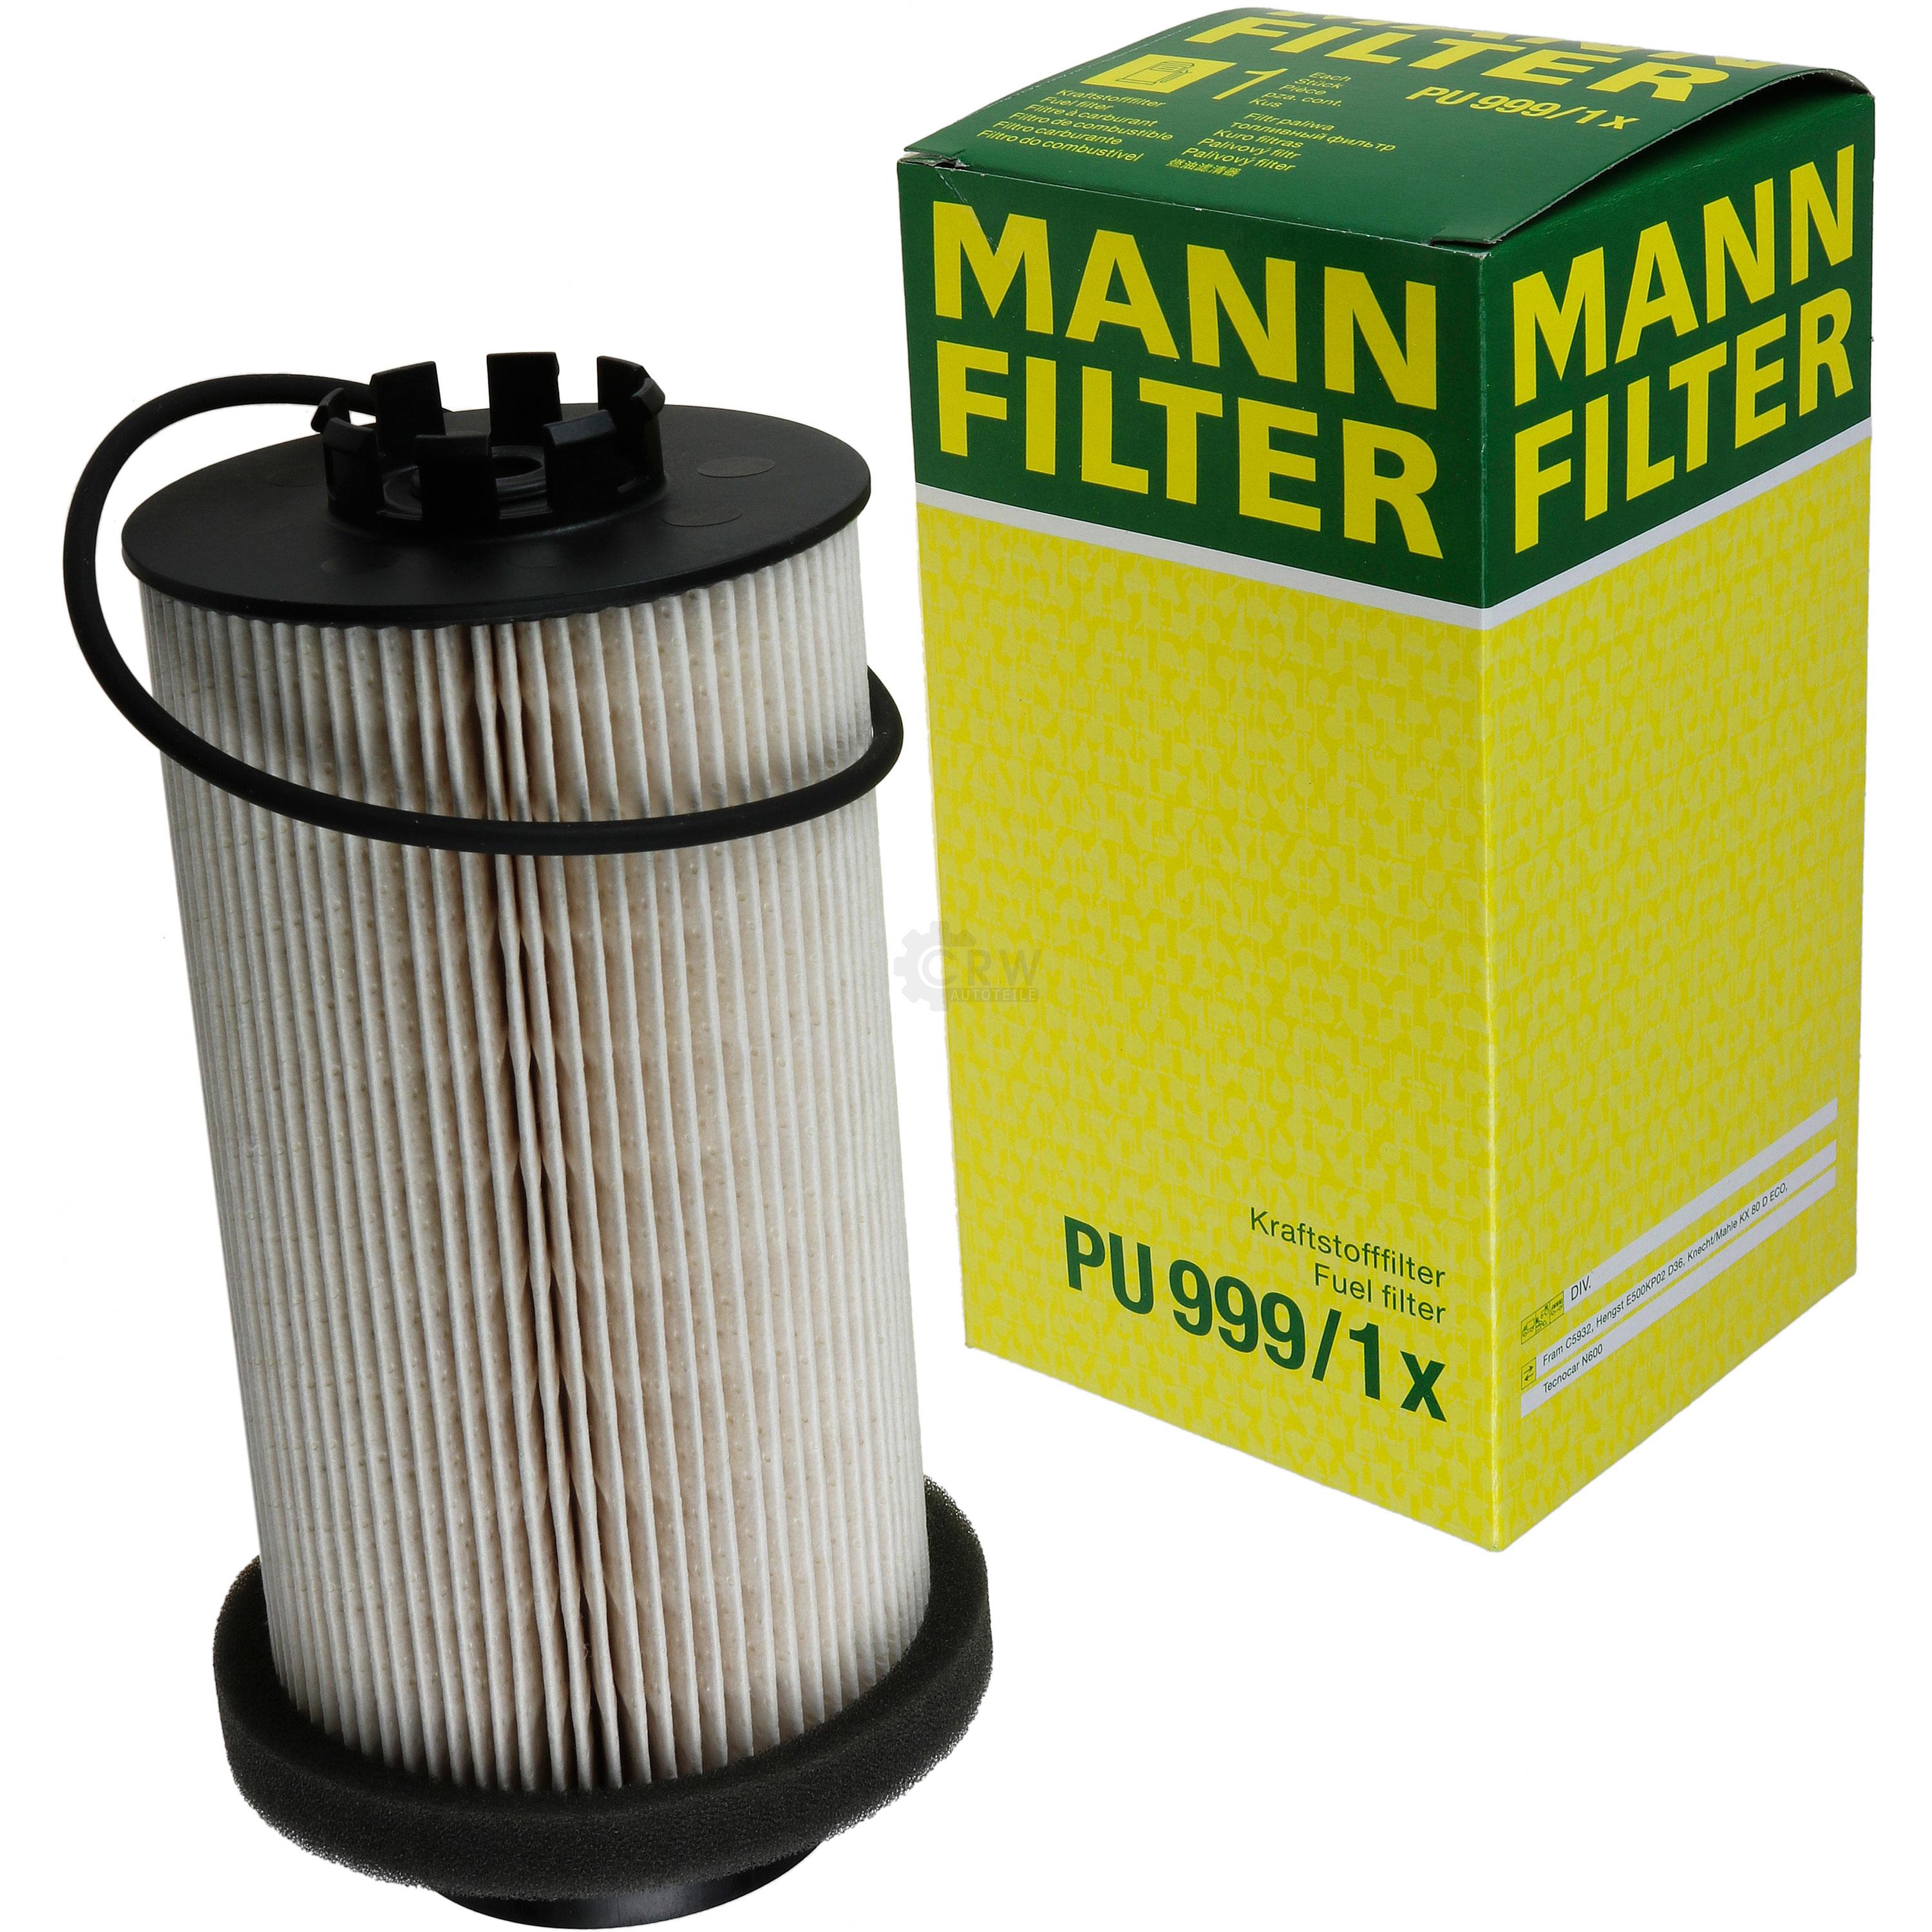 MANN-FILTER Kraftstofffilter PU 999/1 x Fuel Filter